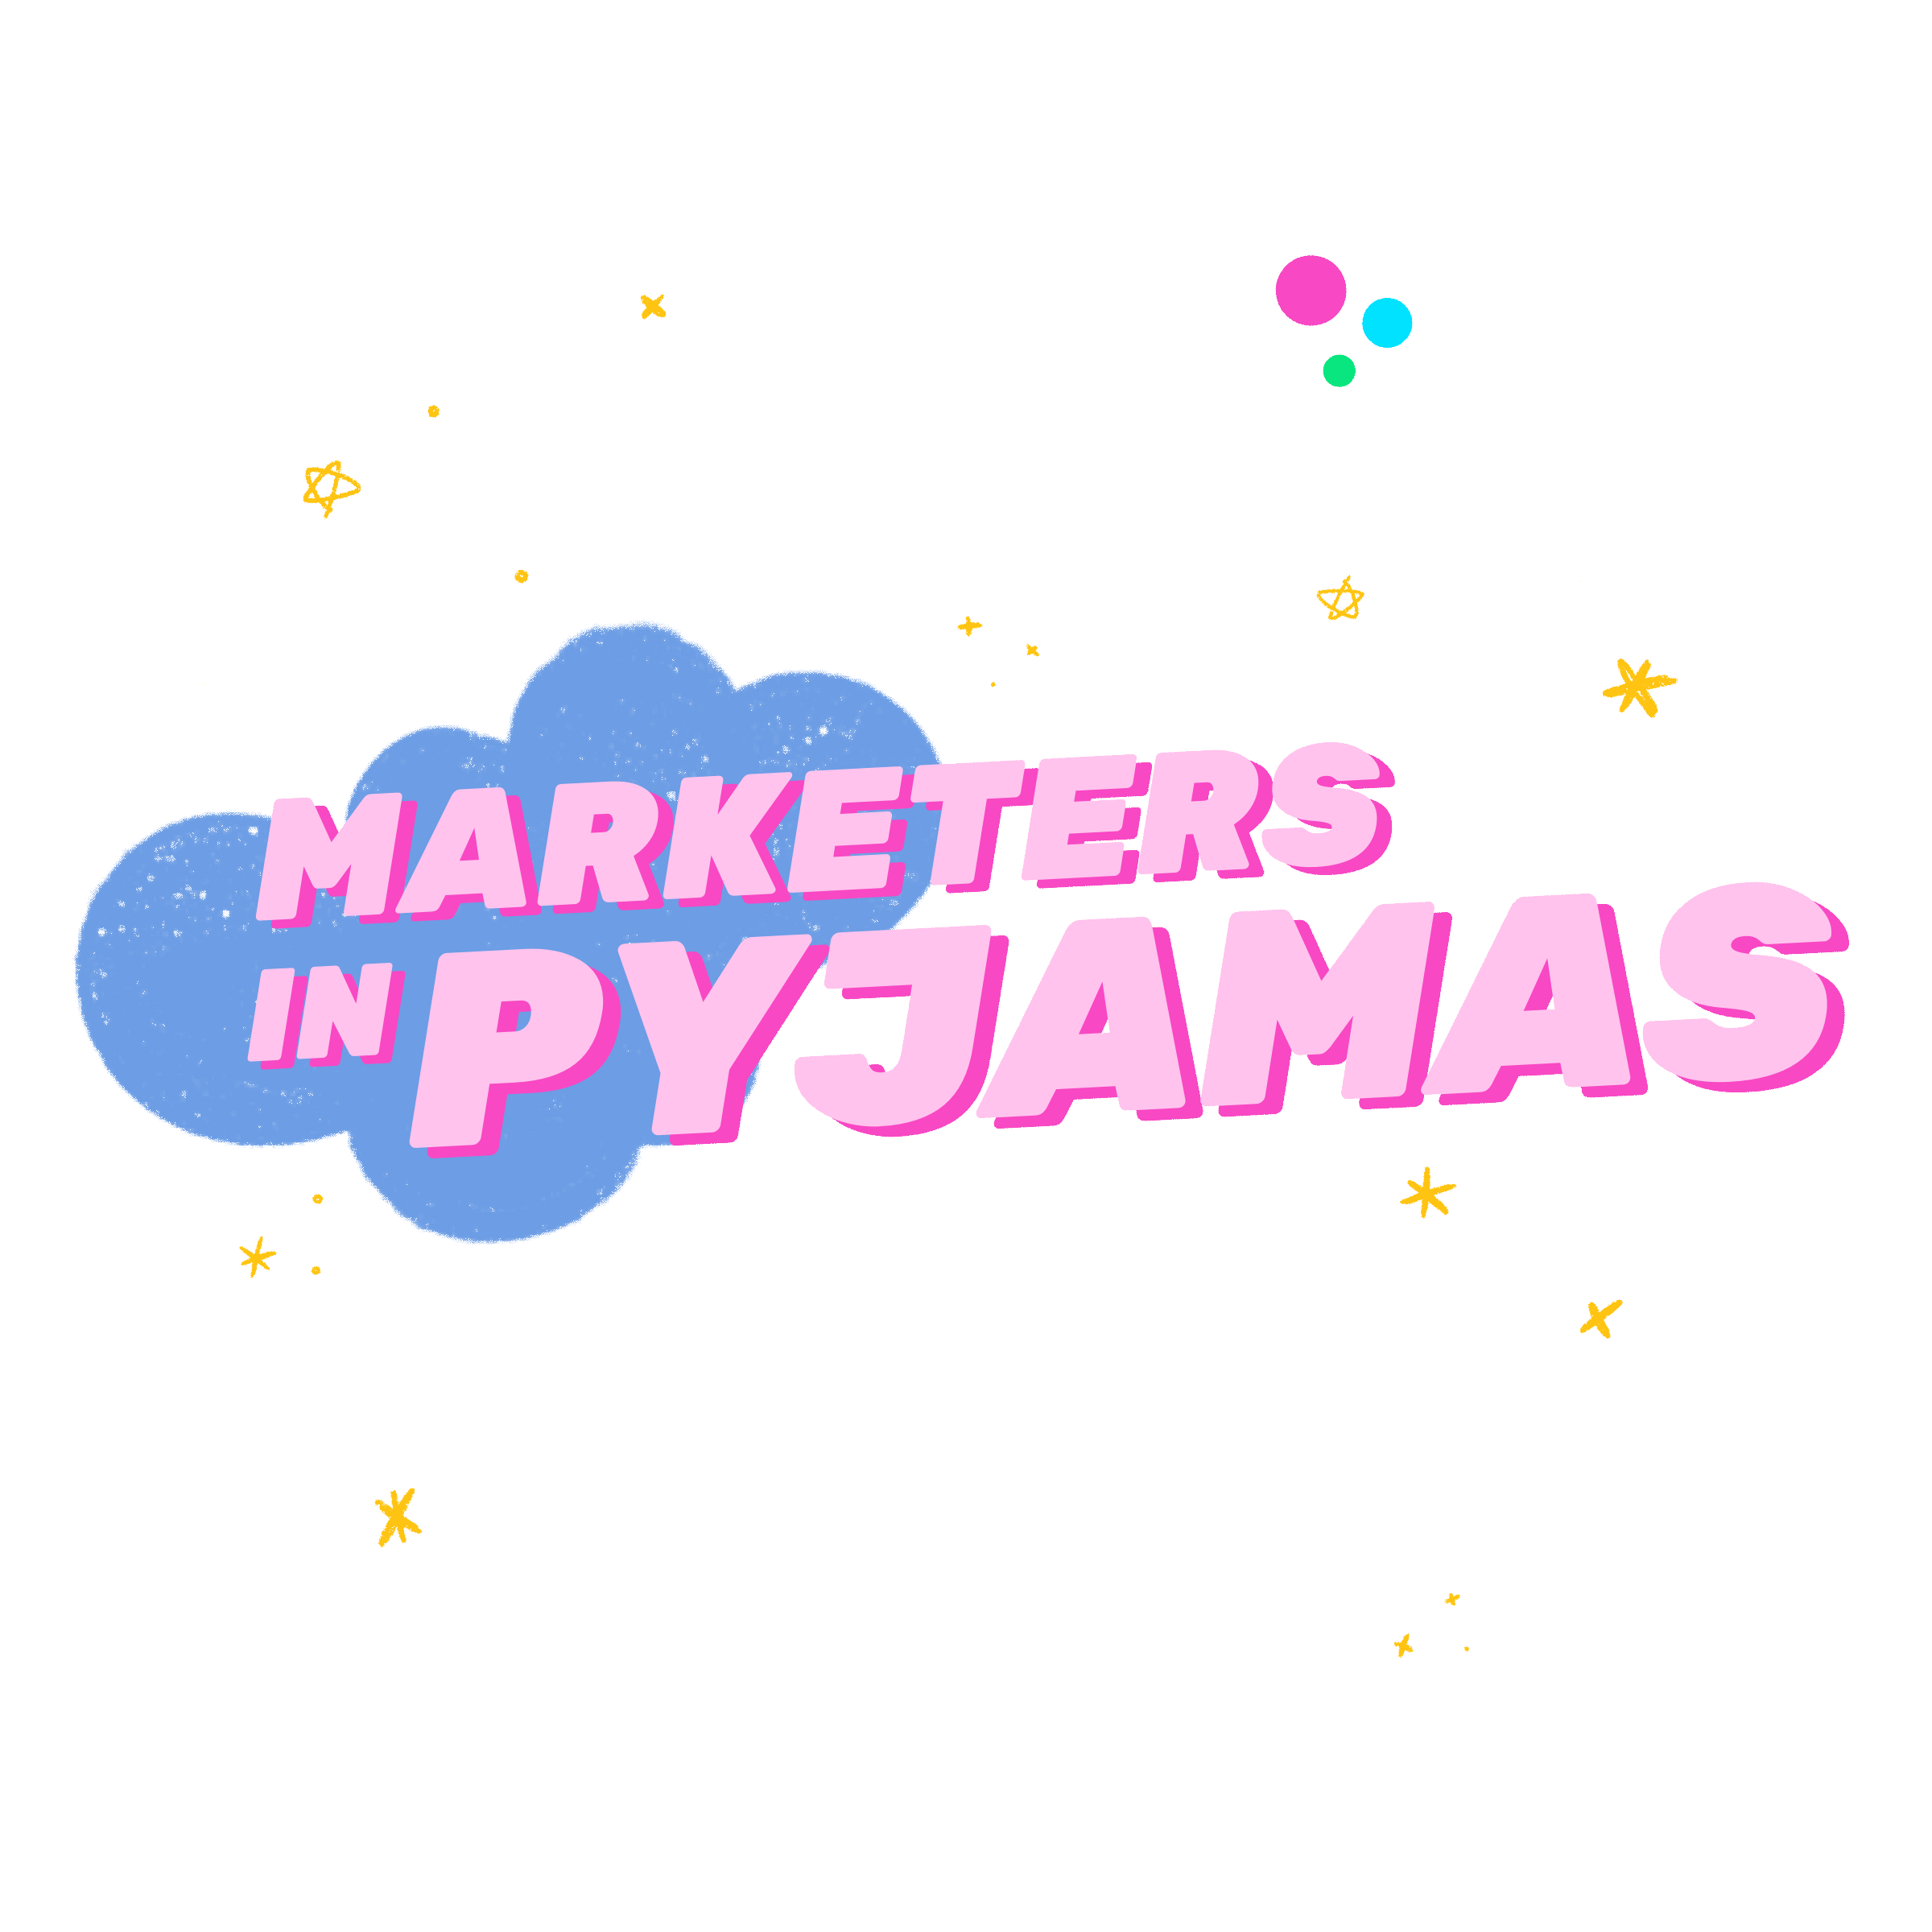 Marketers in Pyjamas